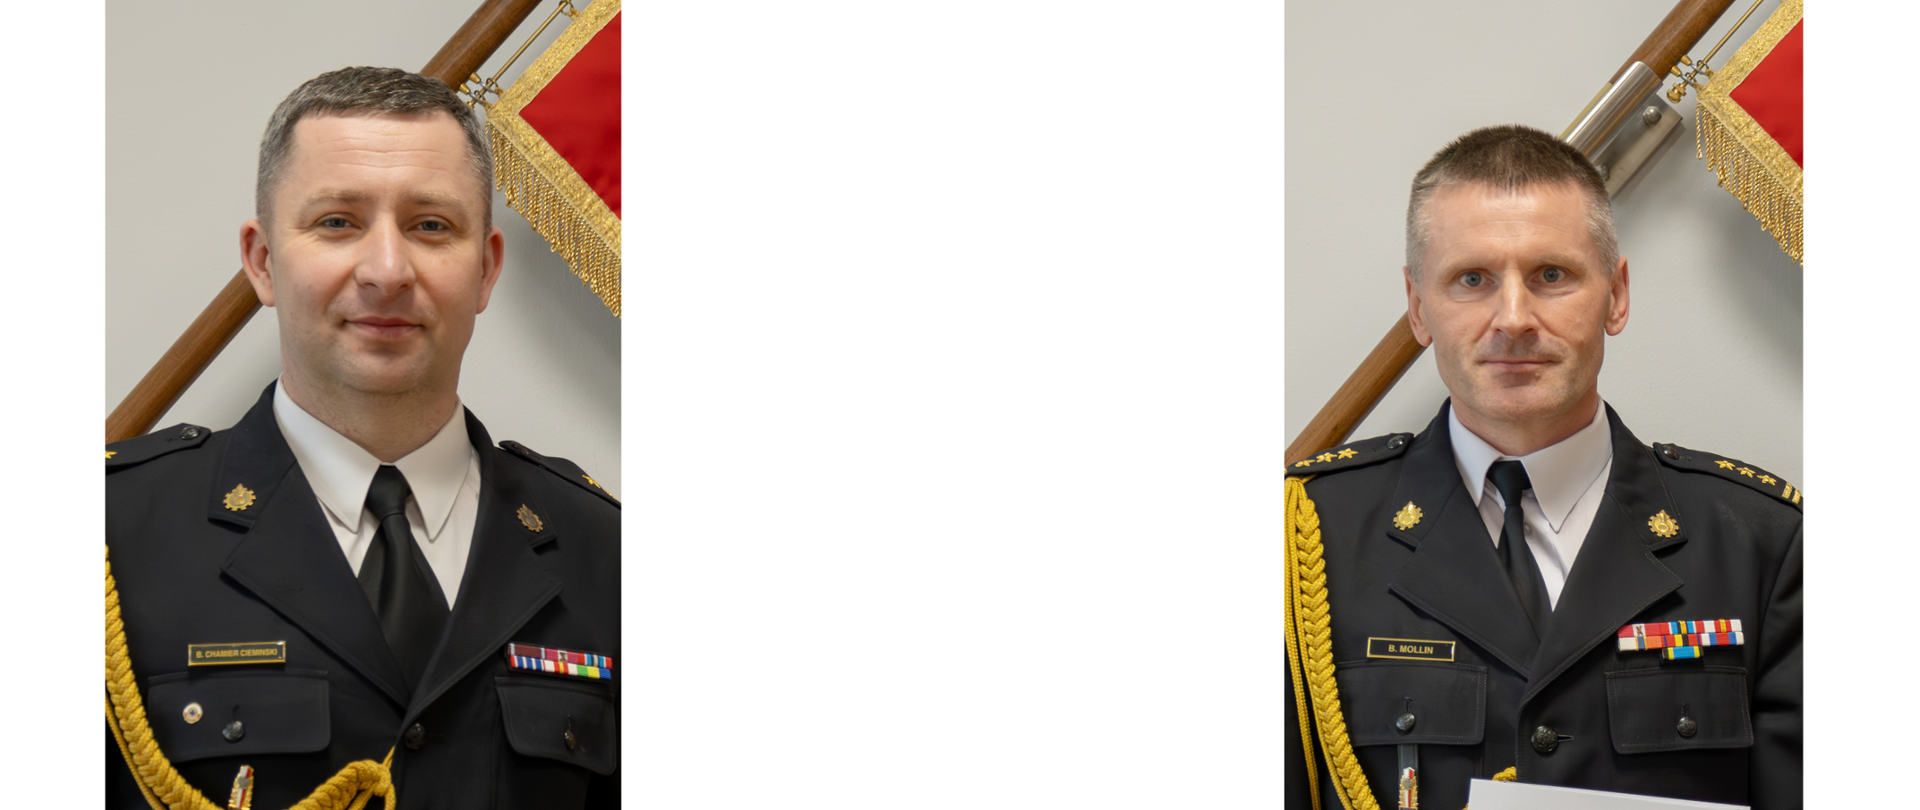 Dwóch strażaków w mundurach wyjściowych ze sznurem trzyma białe teczki za nimi jest widoczny część sztandaru Komendy Głównej Państwowej Straży Pożarnej.